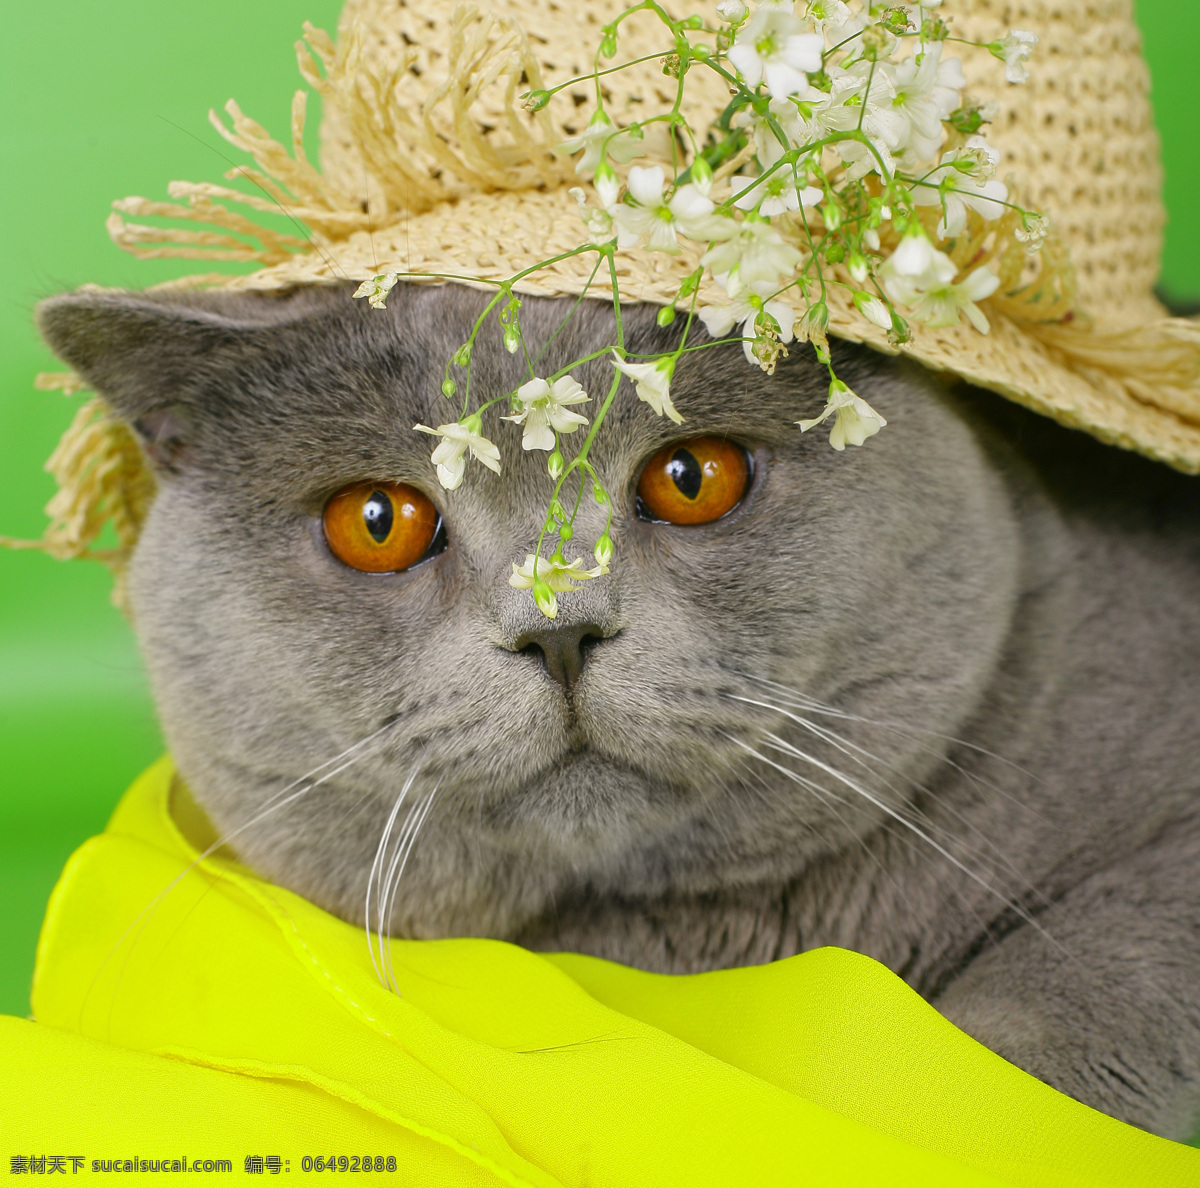 戴 草帽 猫咪 猫 小猫 可爱 萌 宠物 动物世界 动物摄影 戴草帽 猫咪图片 生物世界